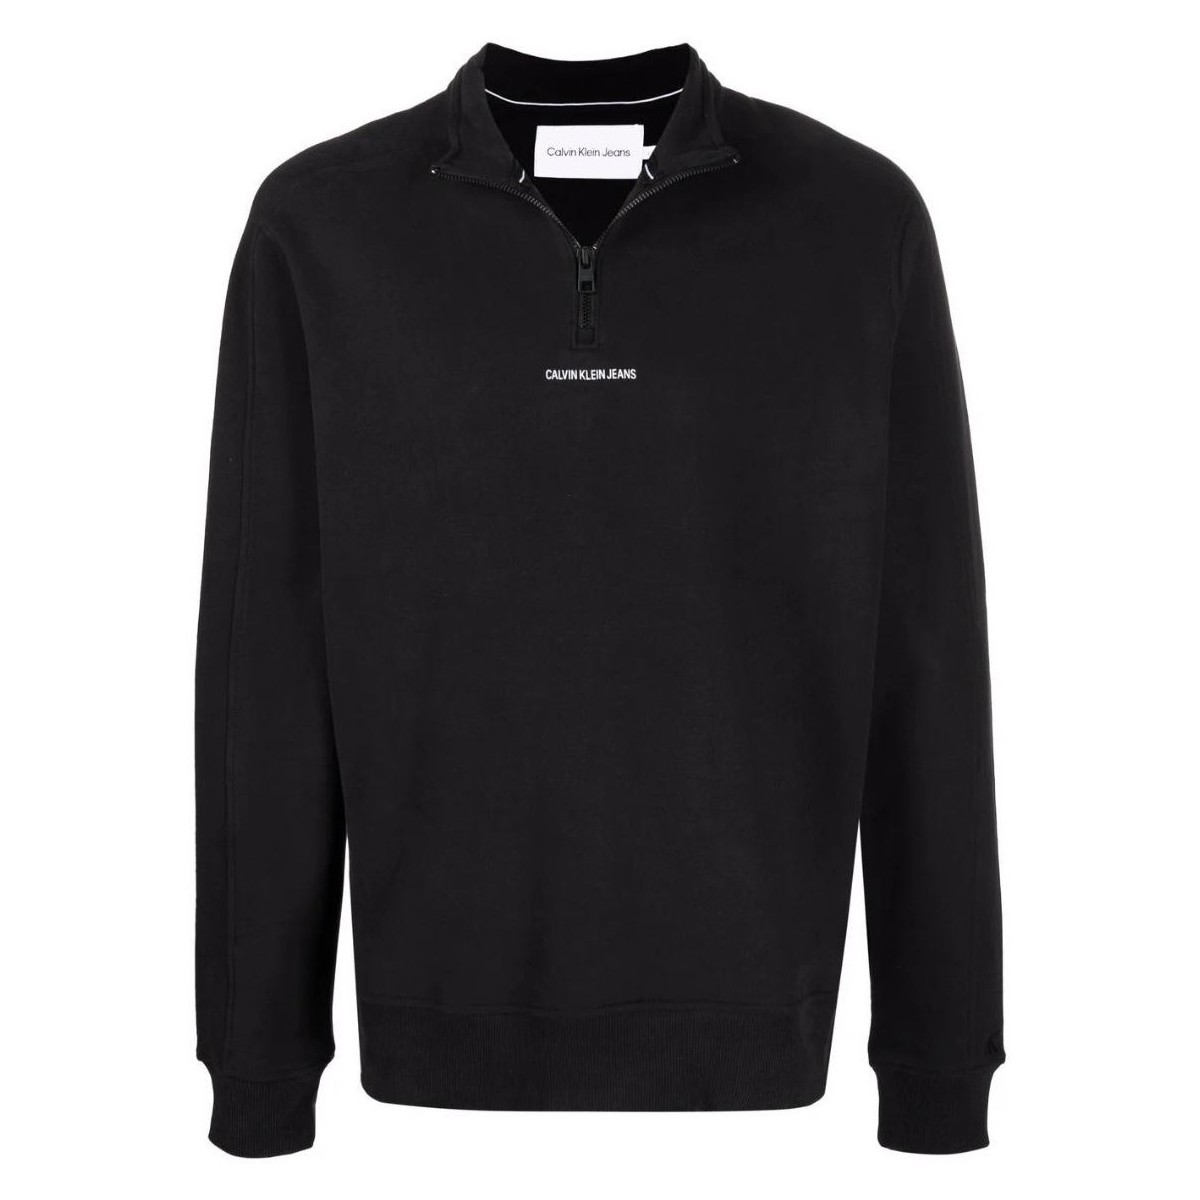 Vêtements Homme Sweats Calvin Klein Jeans Pull  Ref 55550 Noir Noir